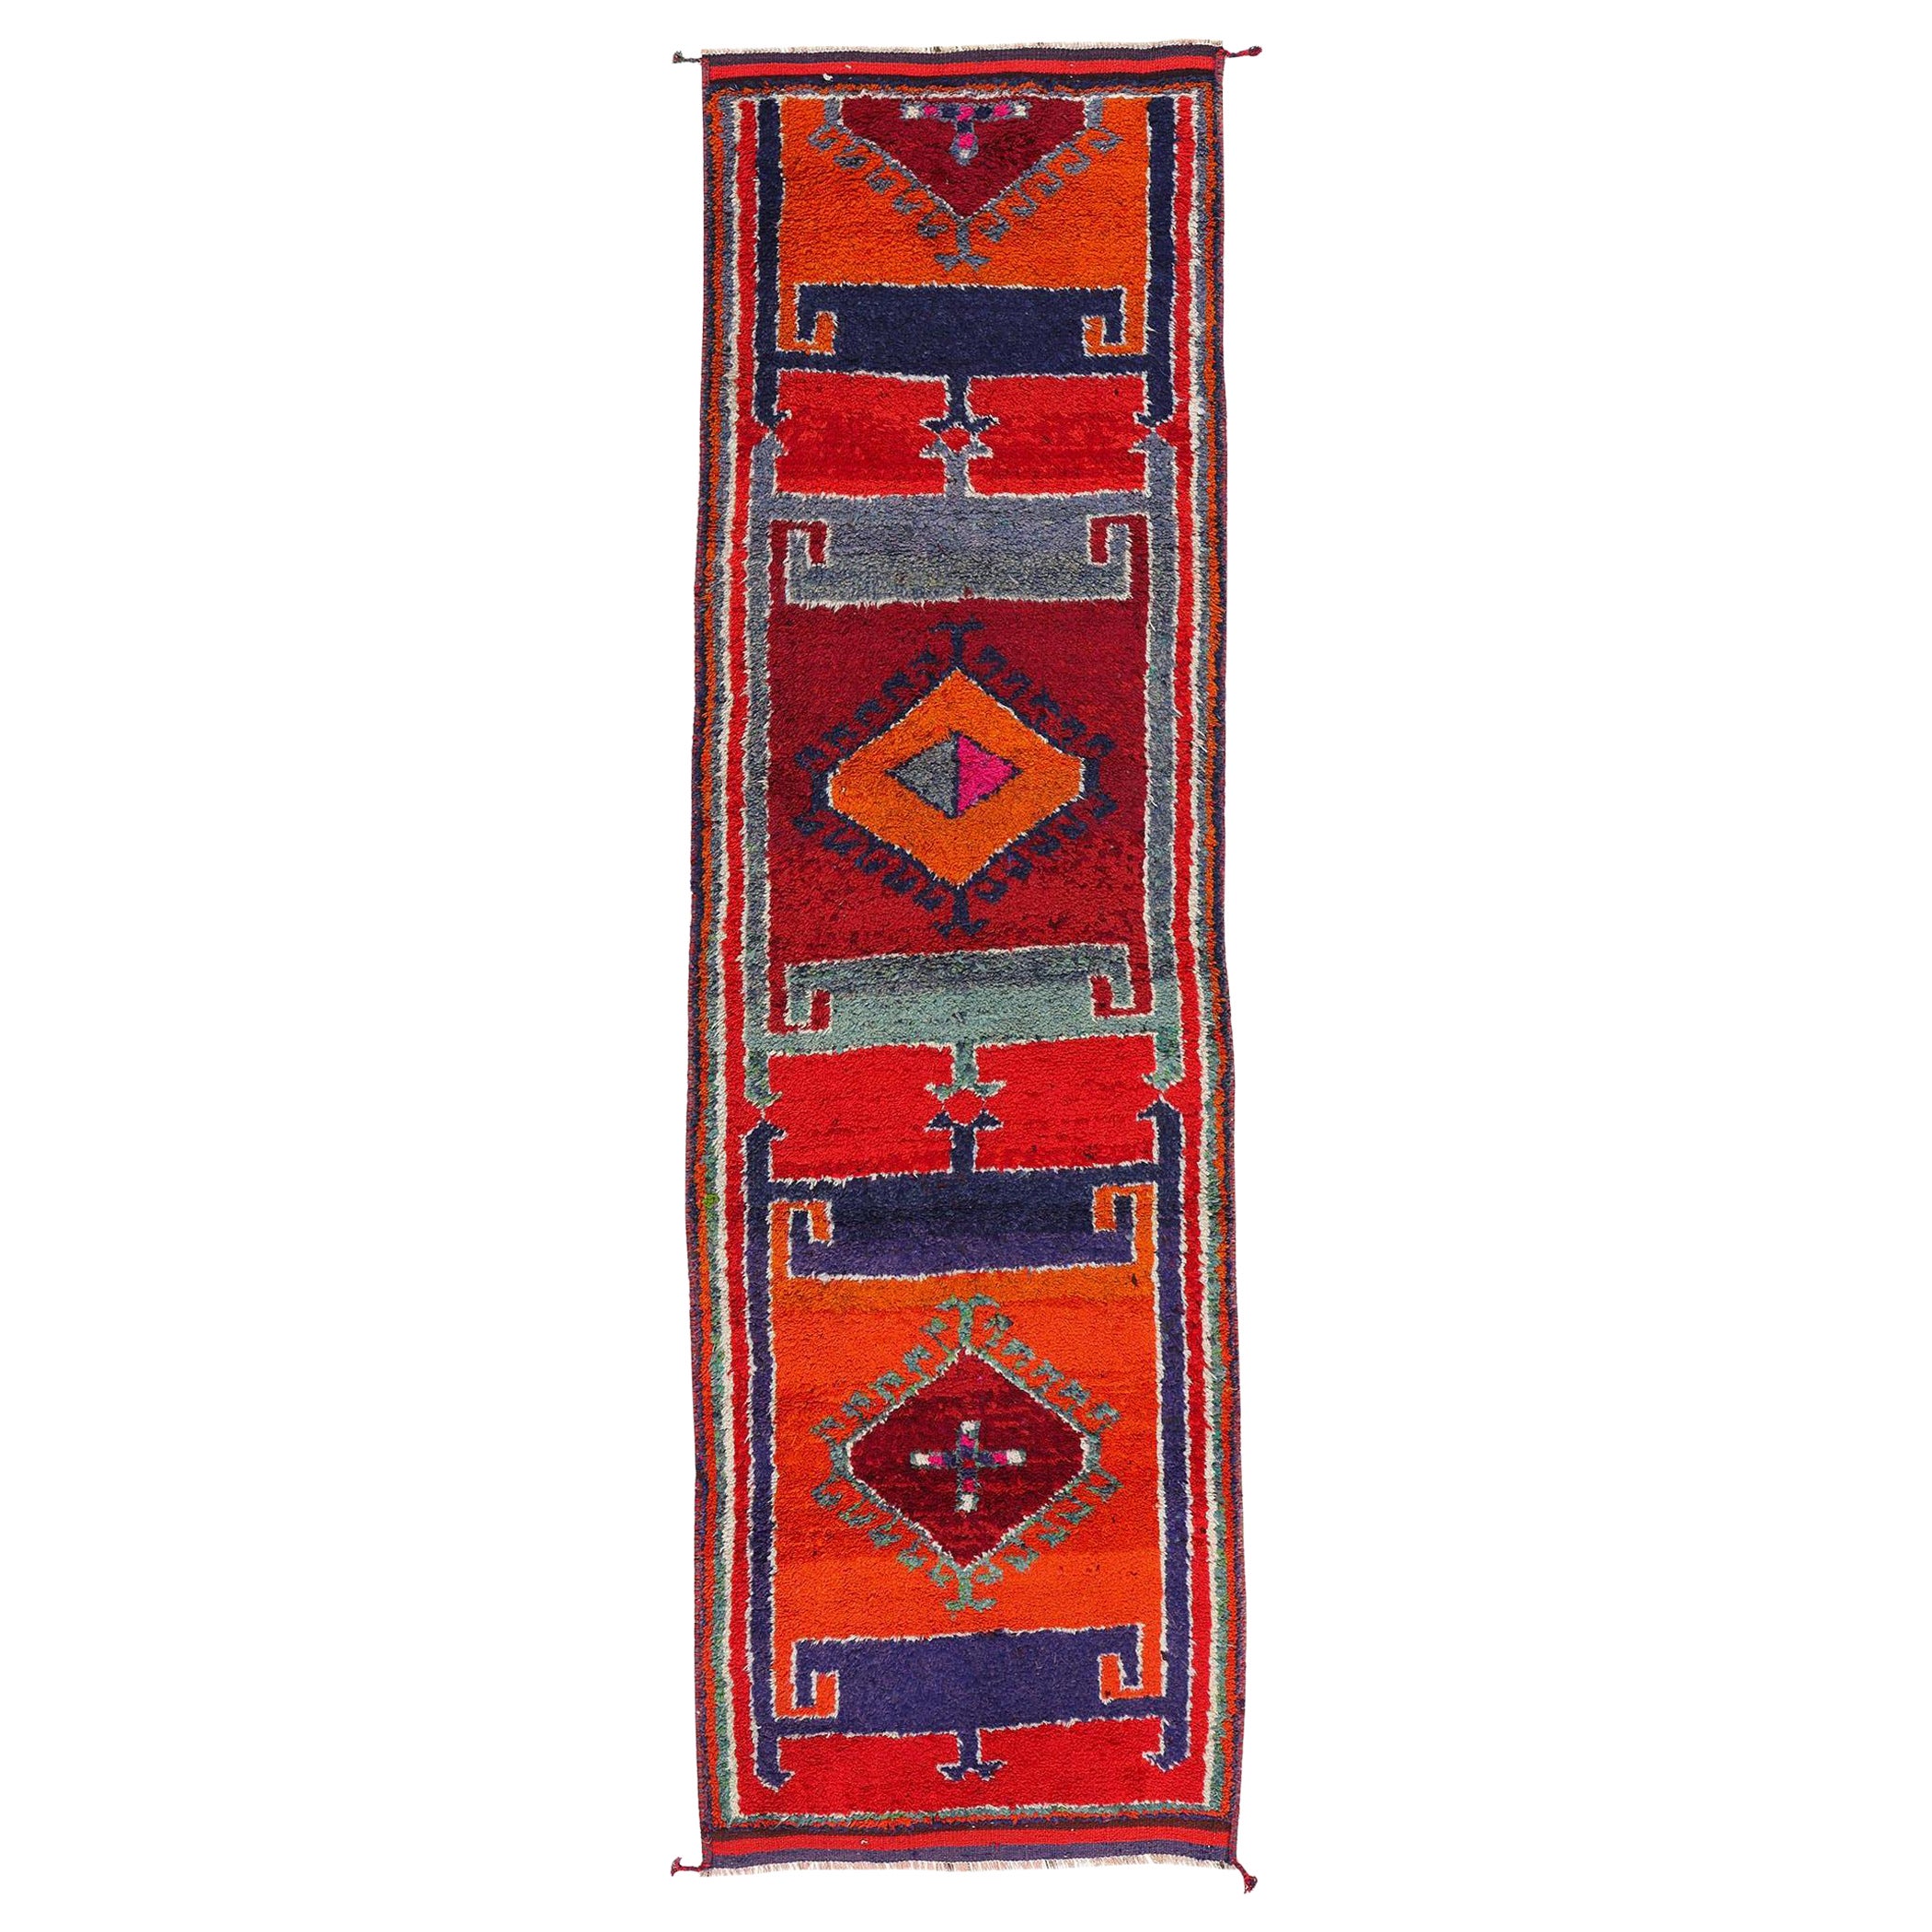 Kurdischer Vintage-Teppich, Anatolischer Vintage, Enchantment Meets Midcentury Boho Chic